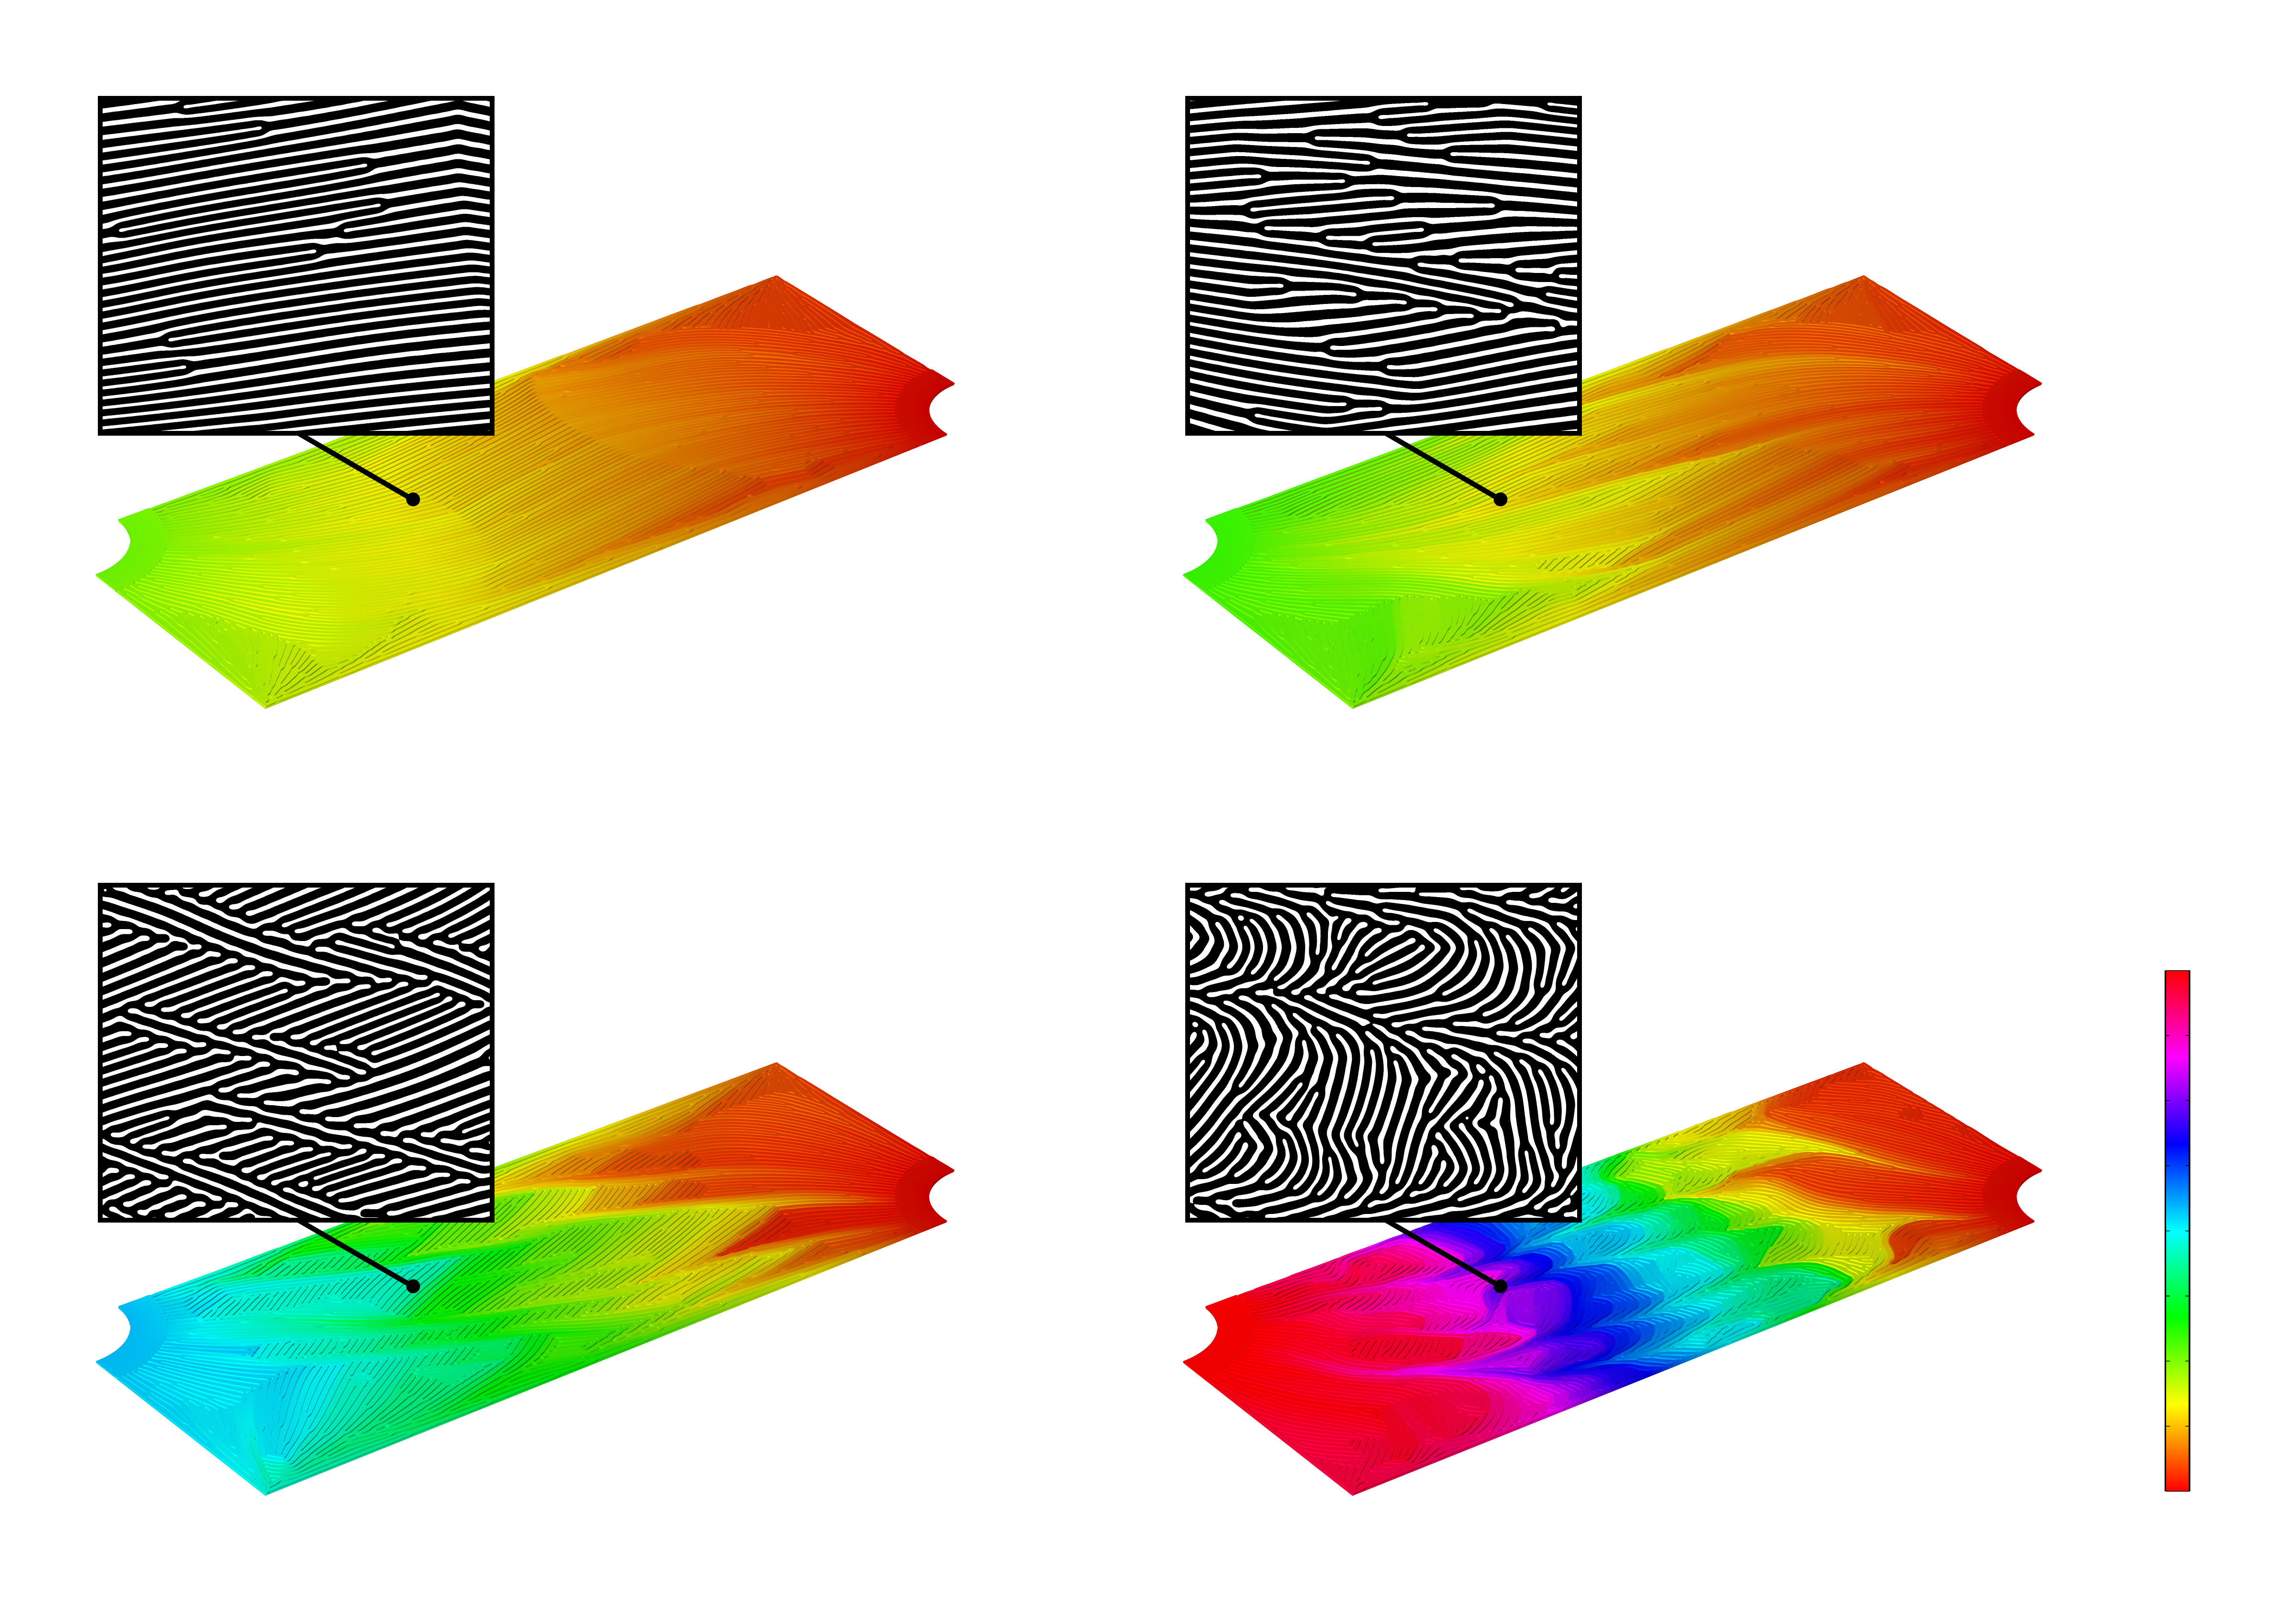 Une matrice 2 x 2 d'images de simulation 3D montrant la distribution de pression de quatre conceptions différentes de microcanaux dans une échelle de couleurs arc-en-ciel. Un encart 2D noir et blanc correspondant à chaque conception de microcanaux apparaît au-dessus de chaque image de simulation.